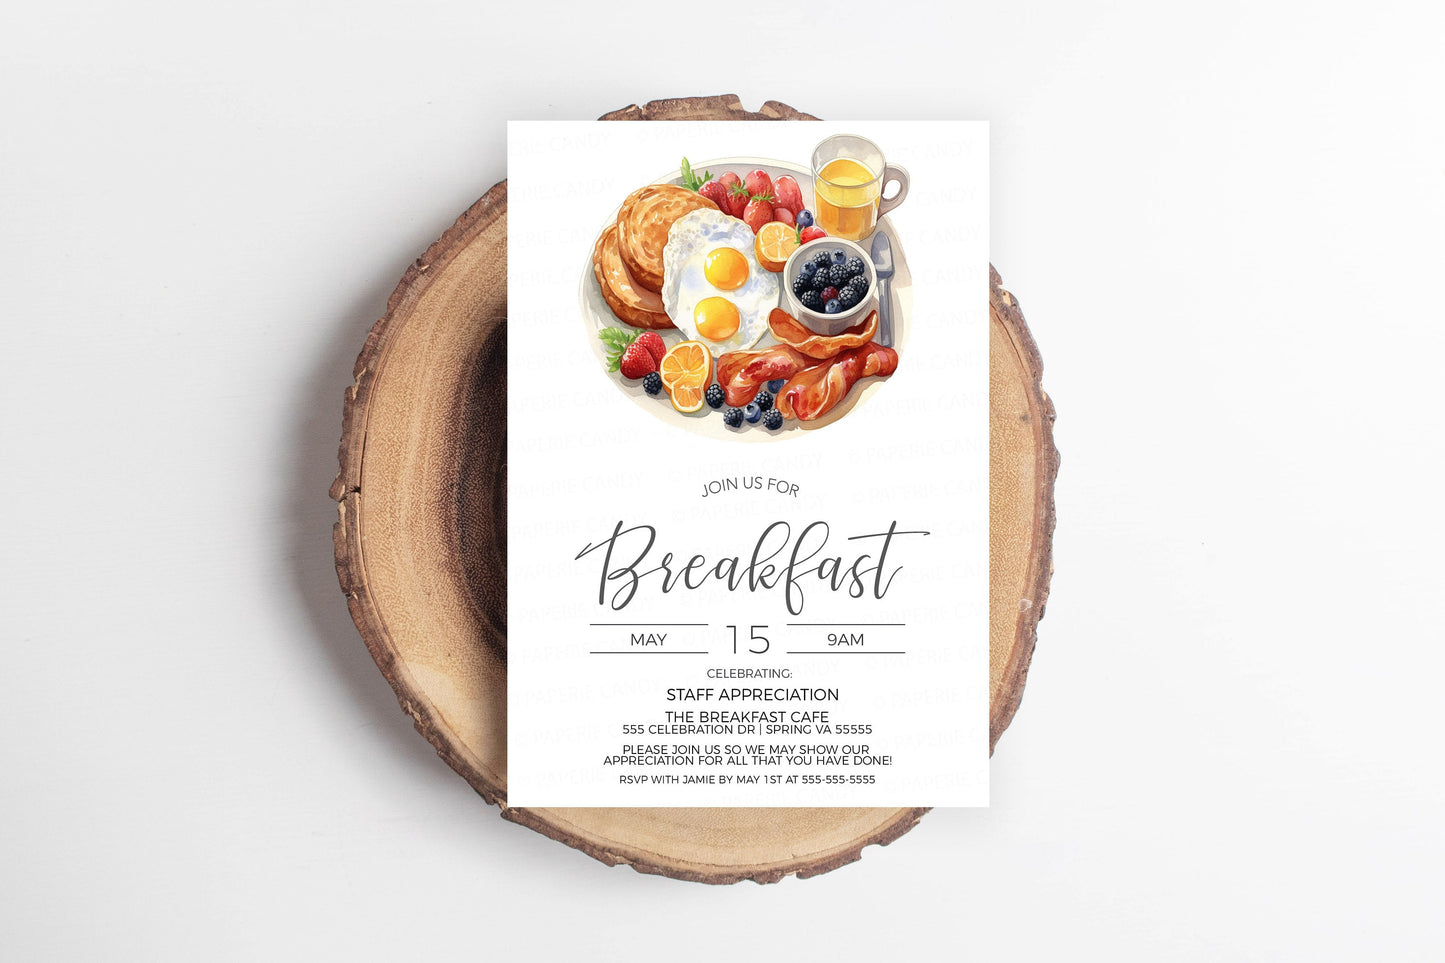 Breakfast Invitation, Staff Employee Appreciation Breakfast Invite, Volunteer Appreciation, Thank You Breakfast, Editable Printable Template